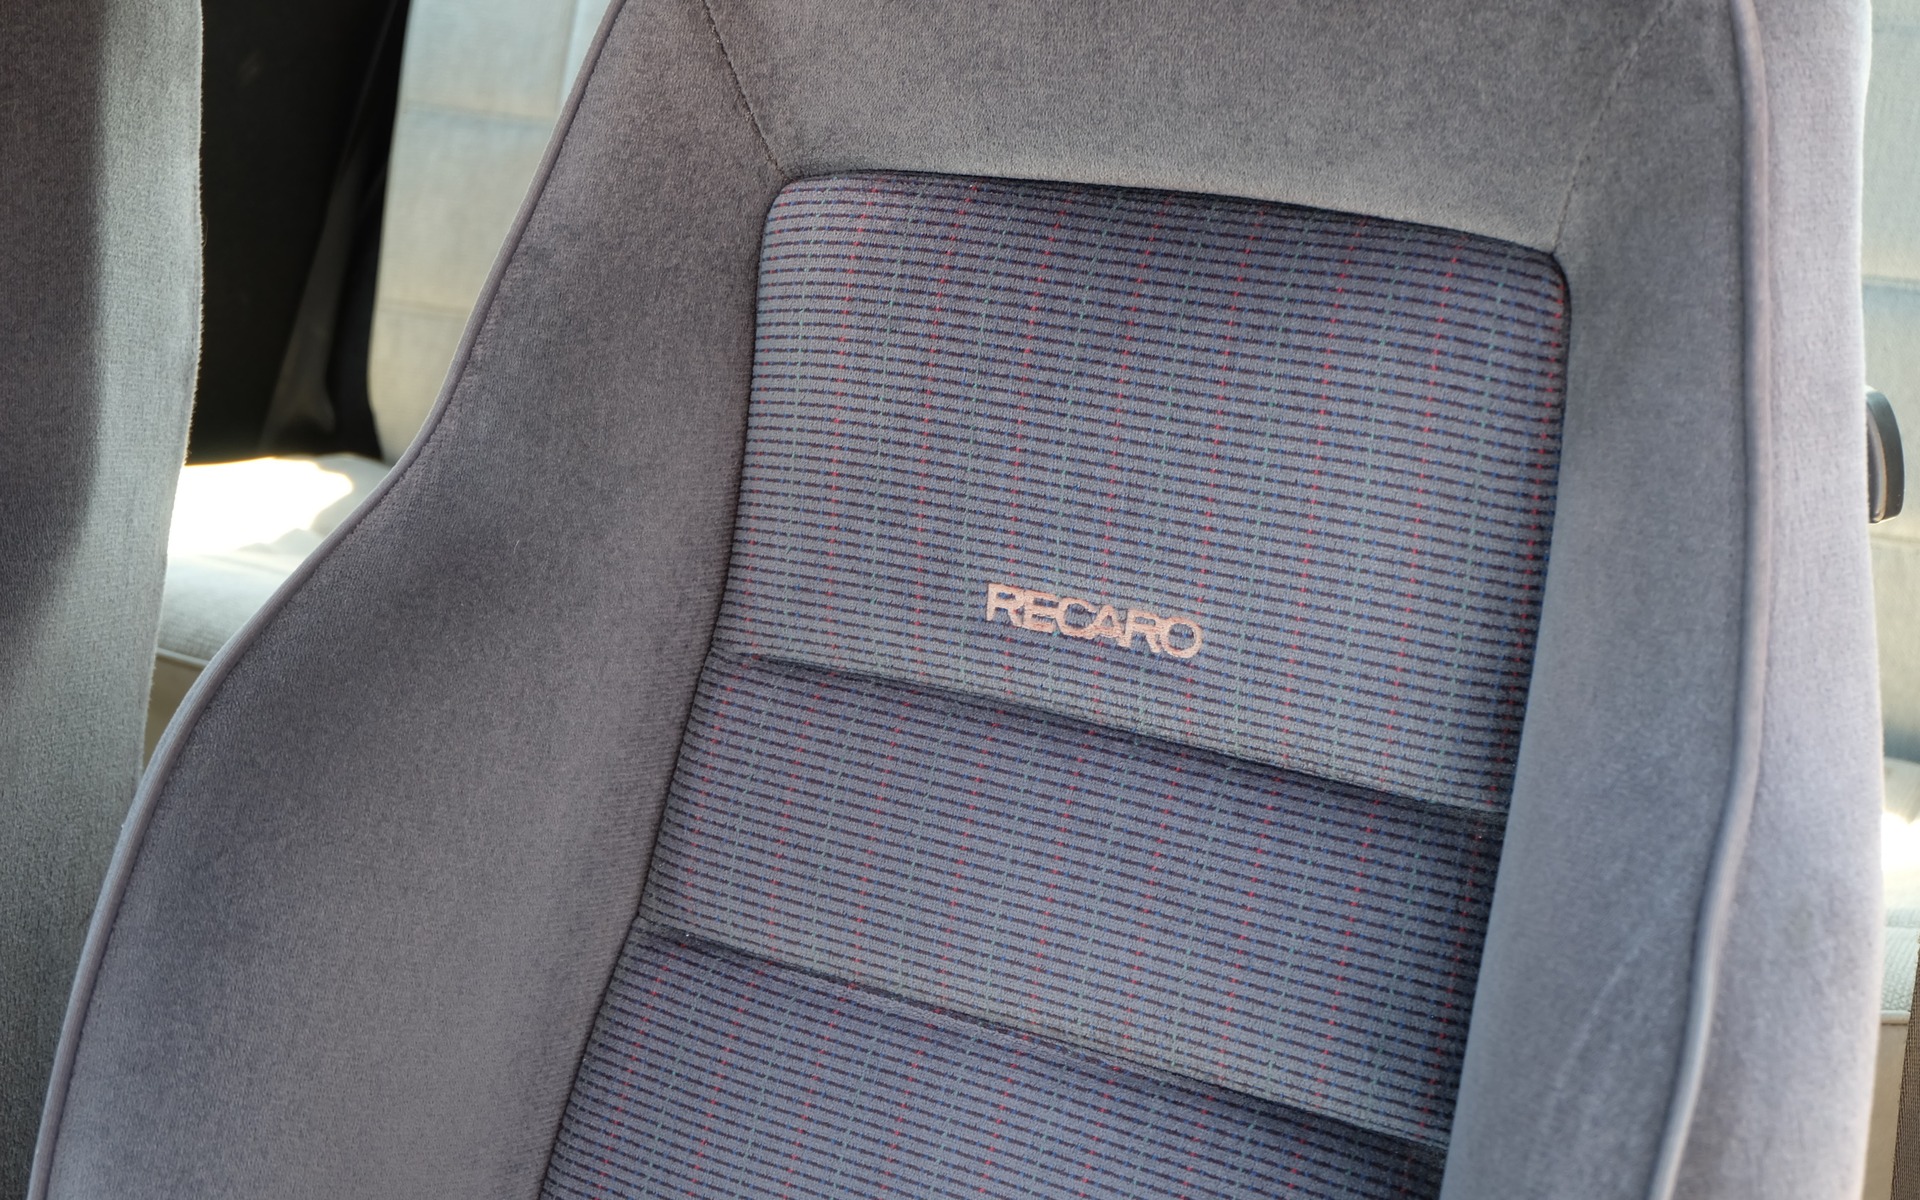 Les sièges Recaro proviennent d'une GTI 1991